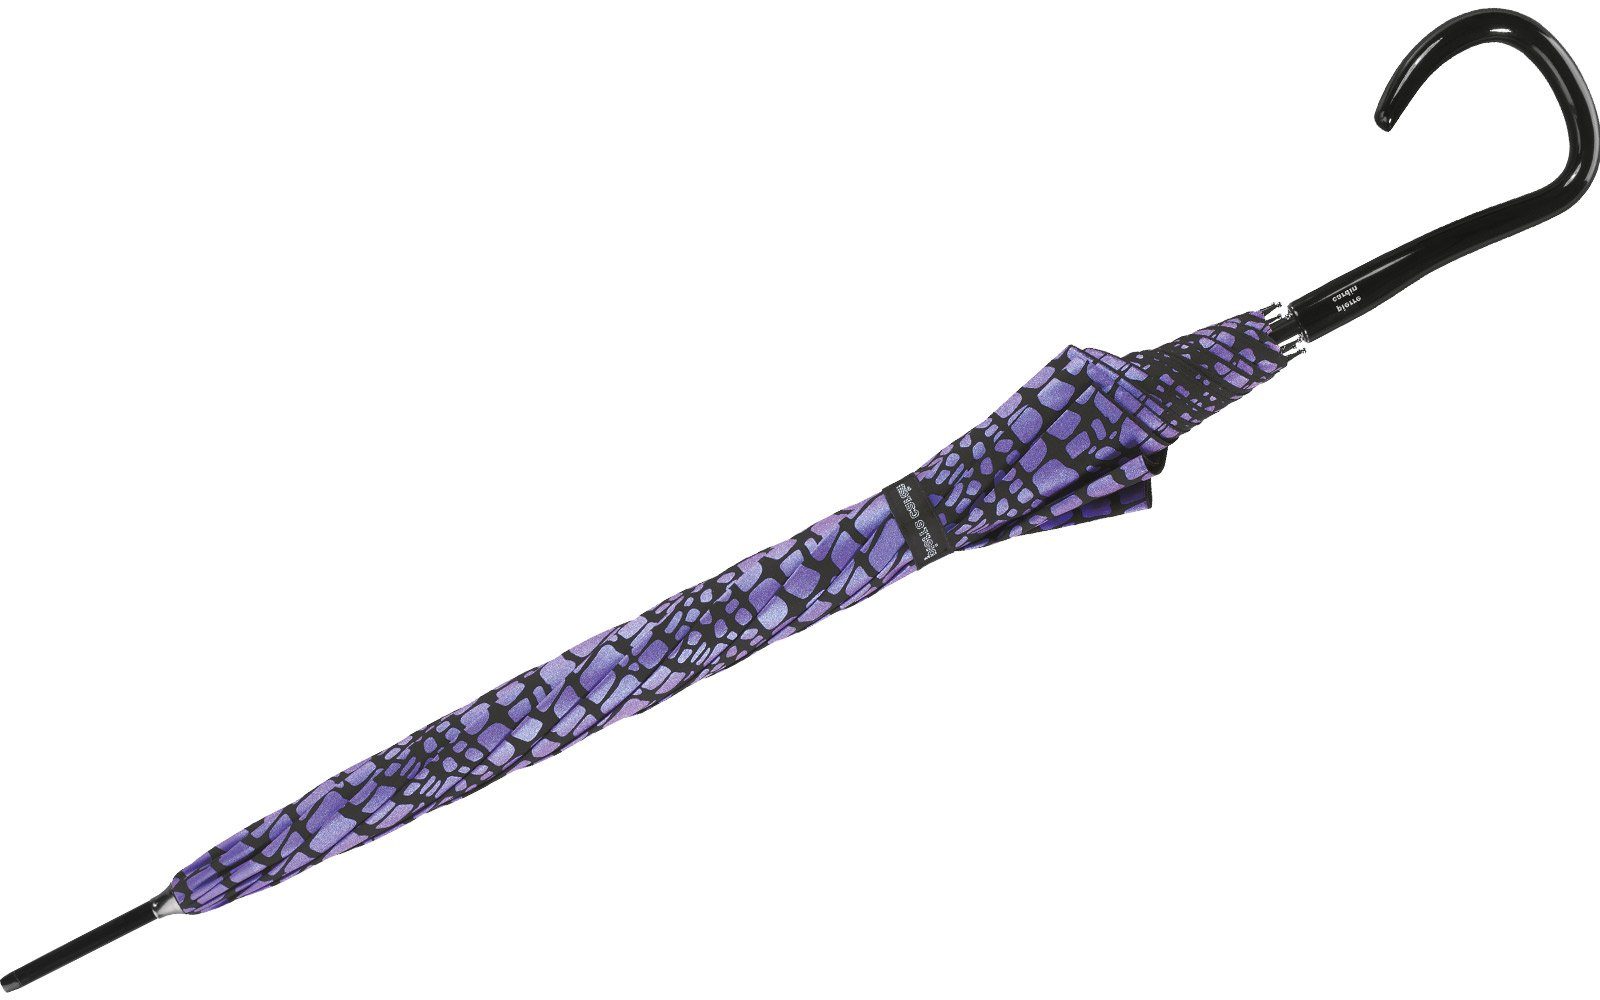 Pierre Cardin Langregenschirm großer Damen-Regenschirm den Krokodil-Optik Regenschirm für mit Auf-Automatik, lila-schwarz